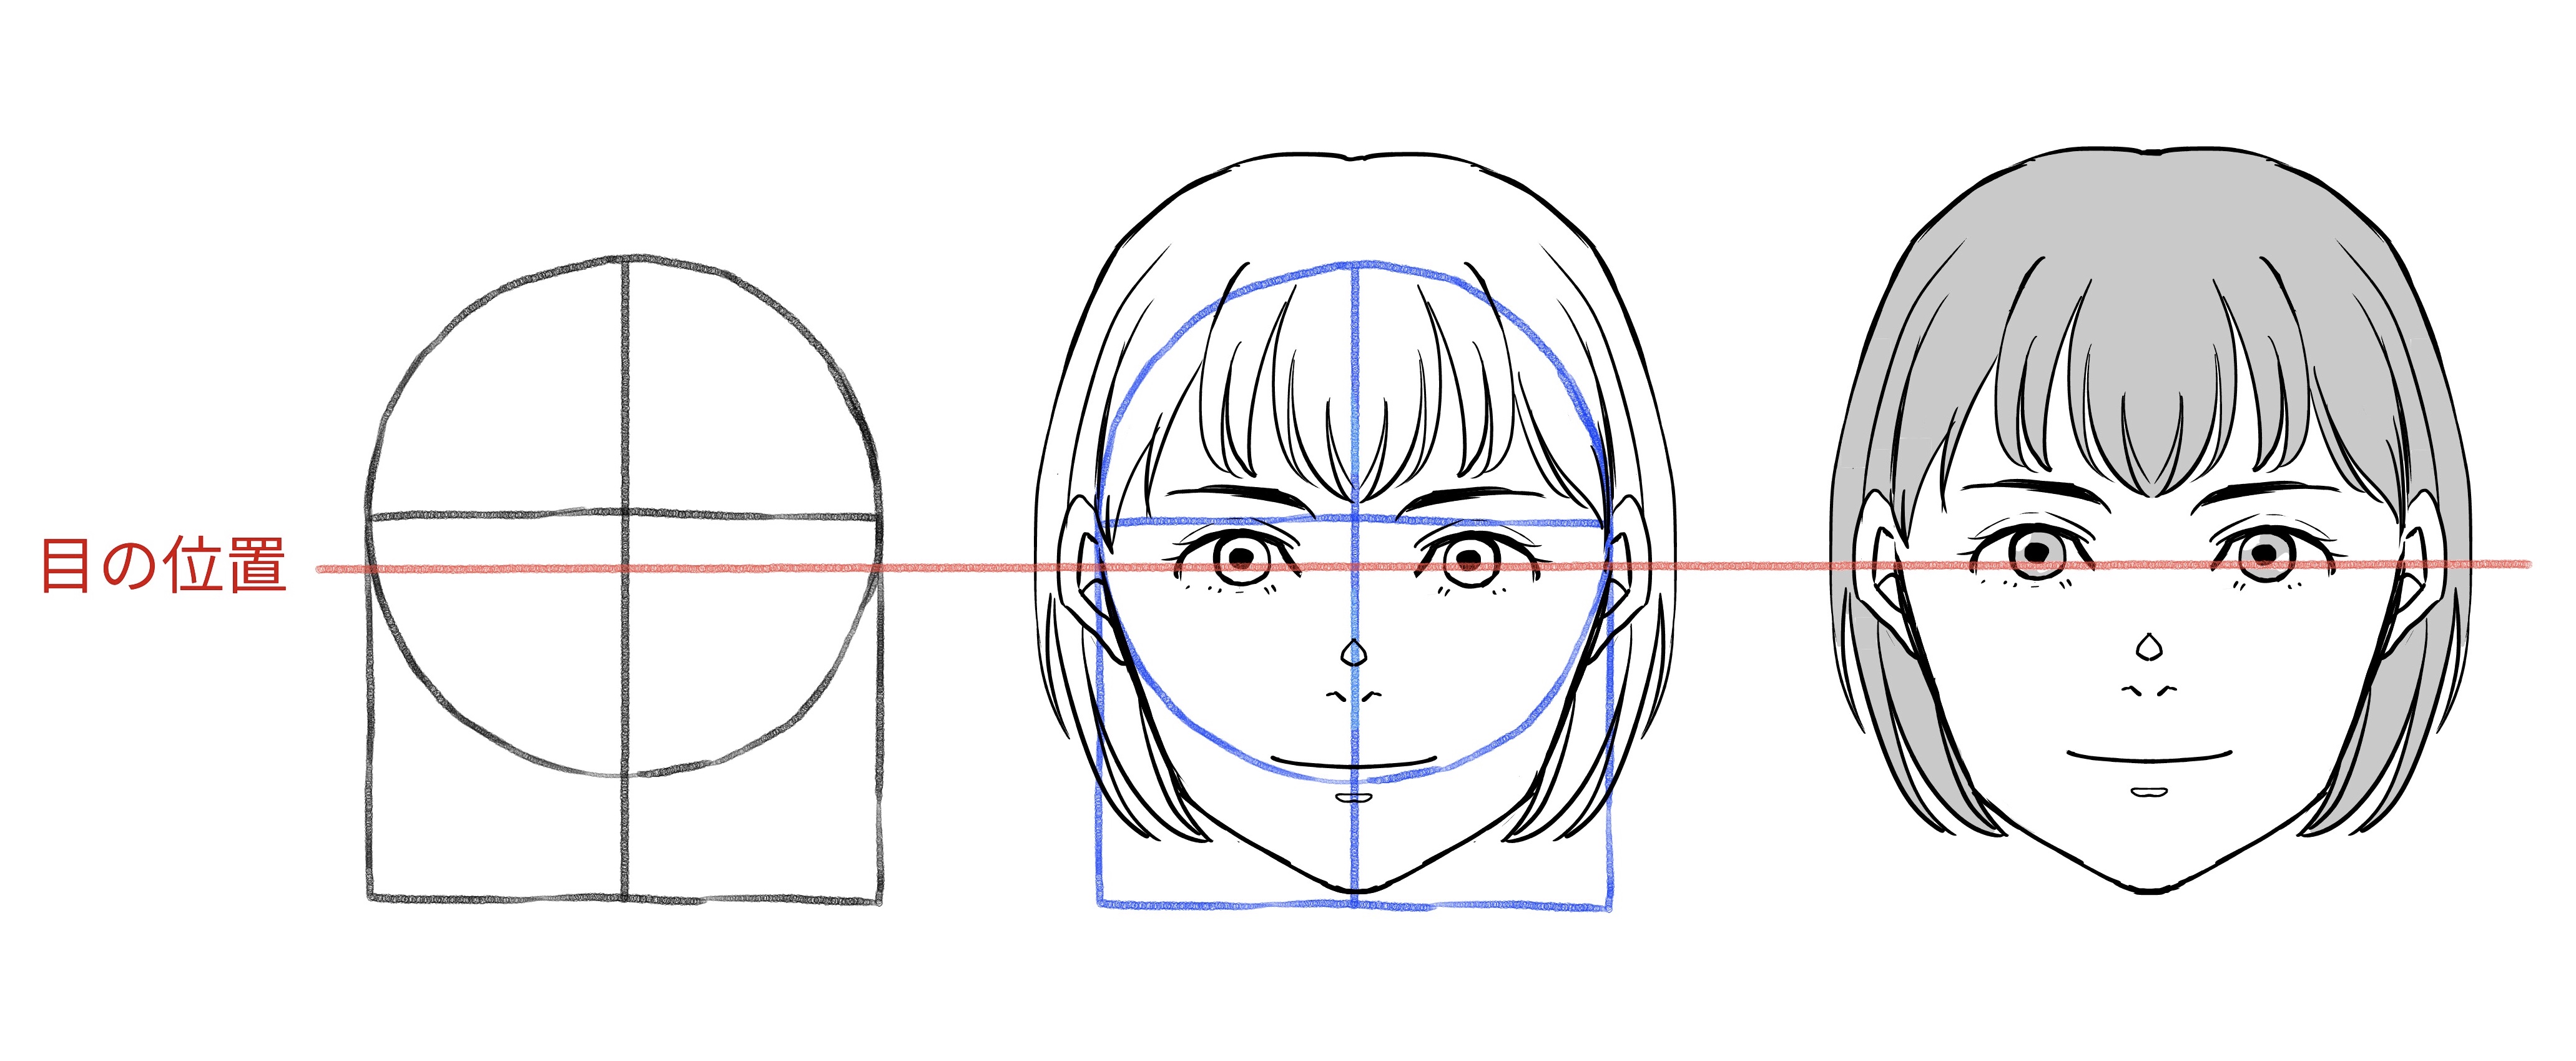 Como desenhar o rosto em vários ângulos, Anime e Manga